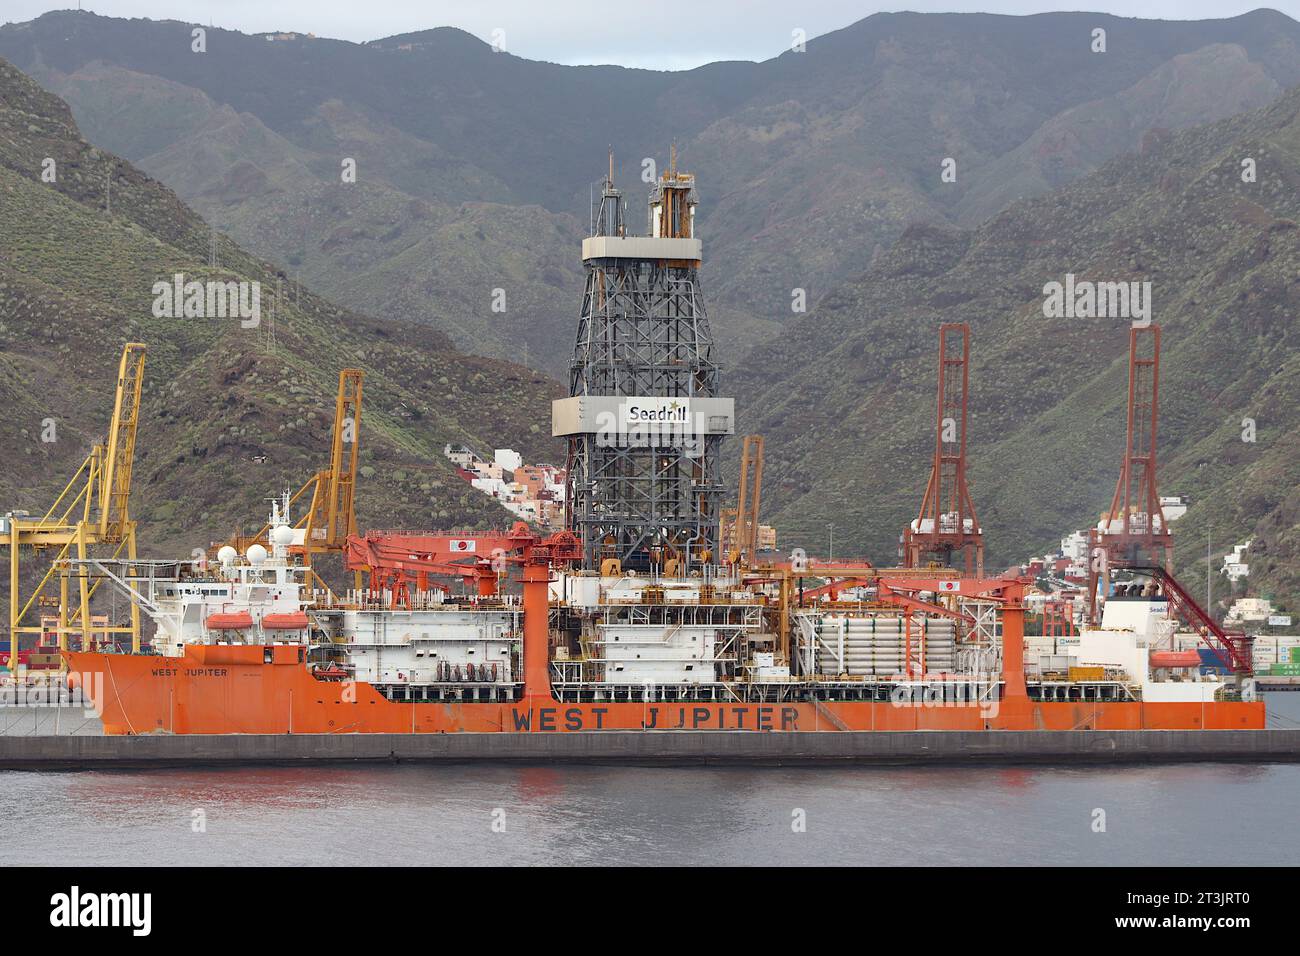 West Jupiter, un navire de forage de 60 000 tonnes battant pavillon panaméen appartenant à Seadrill Carina Ltd, amarré à Santa Cruz, Tenerife, Îles Canaries, avril 2022. Banque D'Images